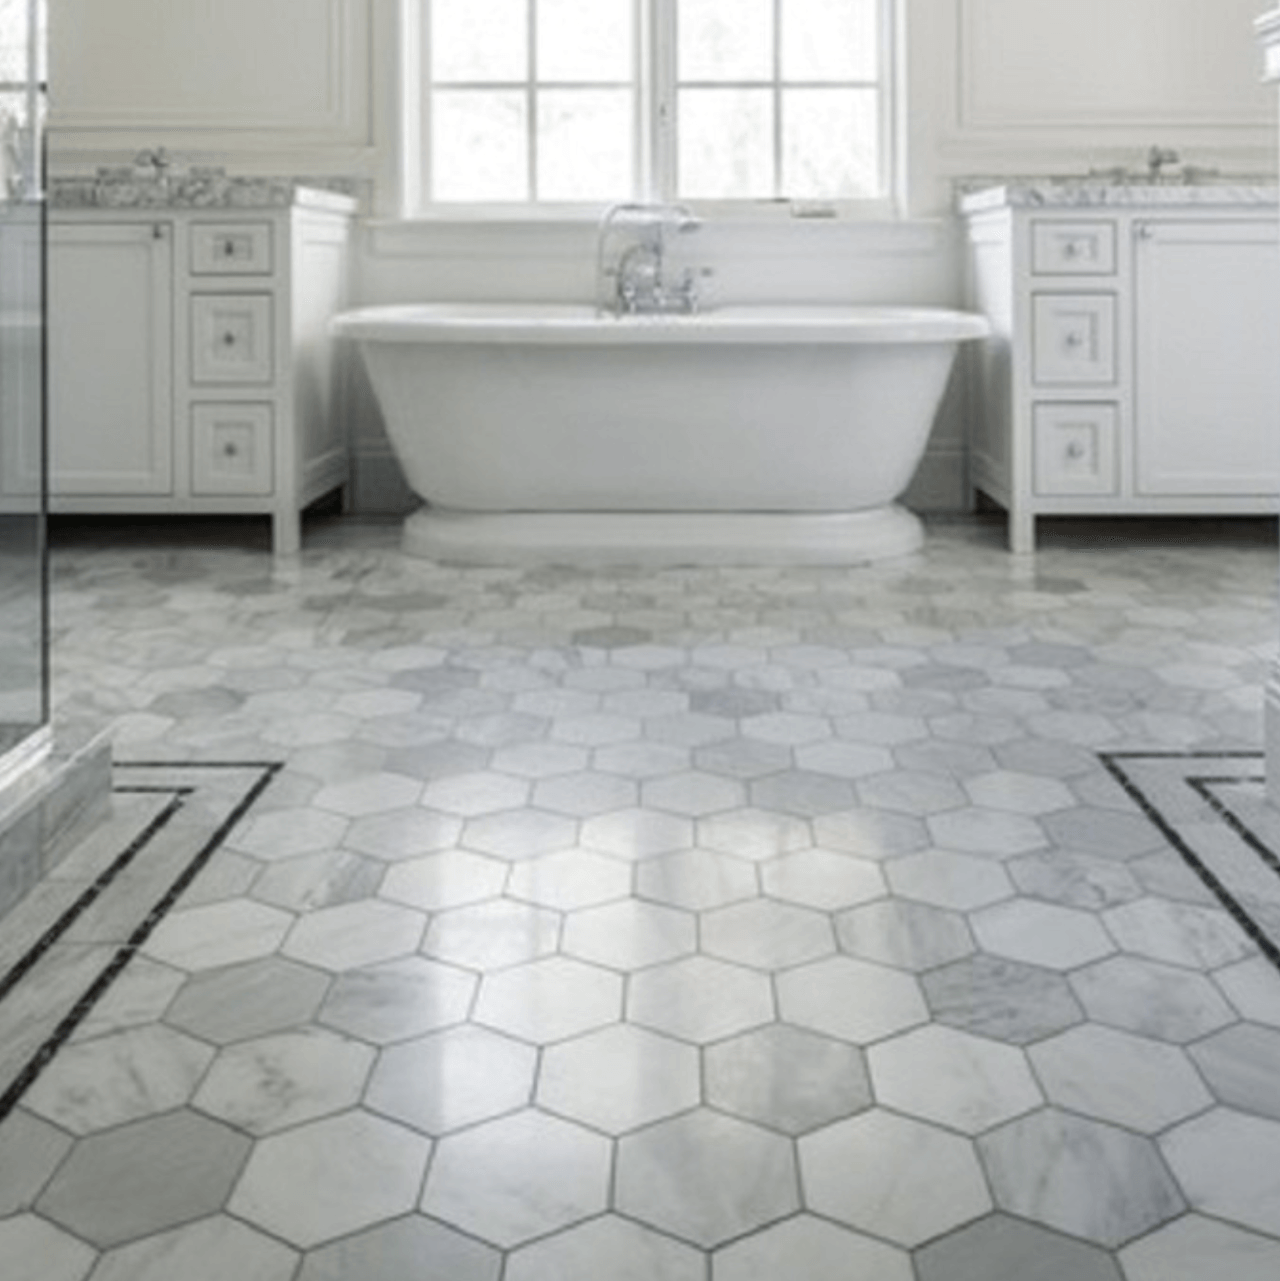 Hexagon tiles, bathroom floor tile